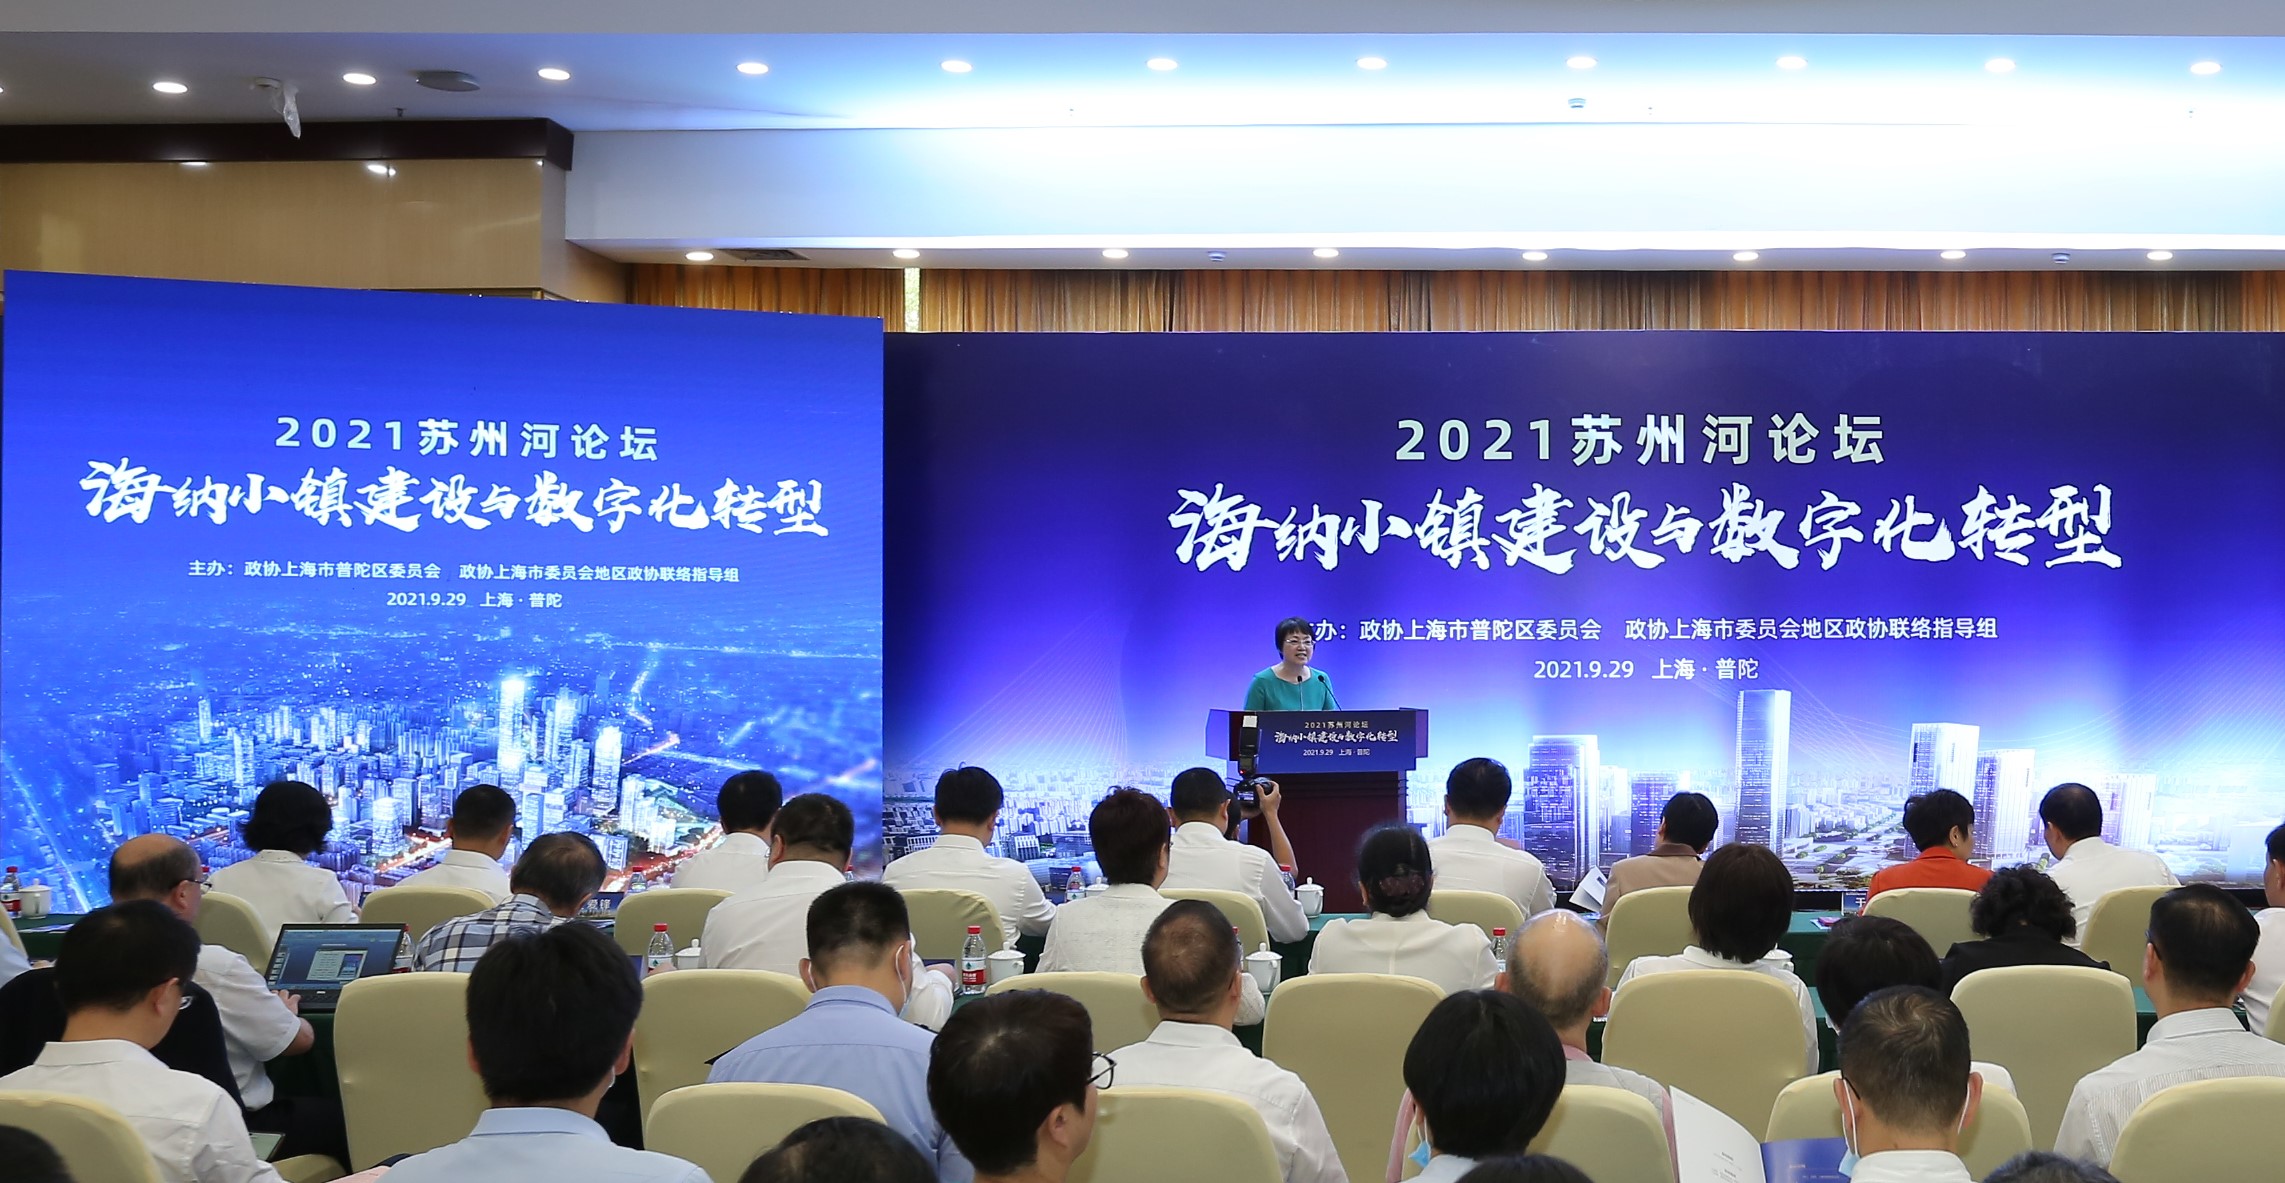 第四届上海数字创新大会在普陀区举行 搭建交流平台 探索城市数字化转型